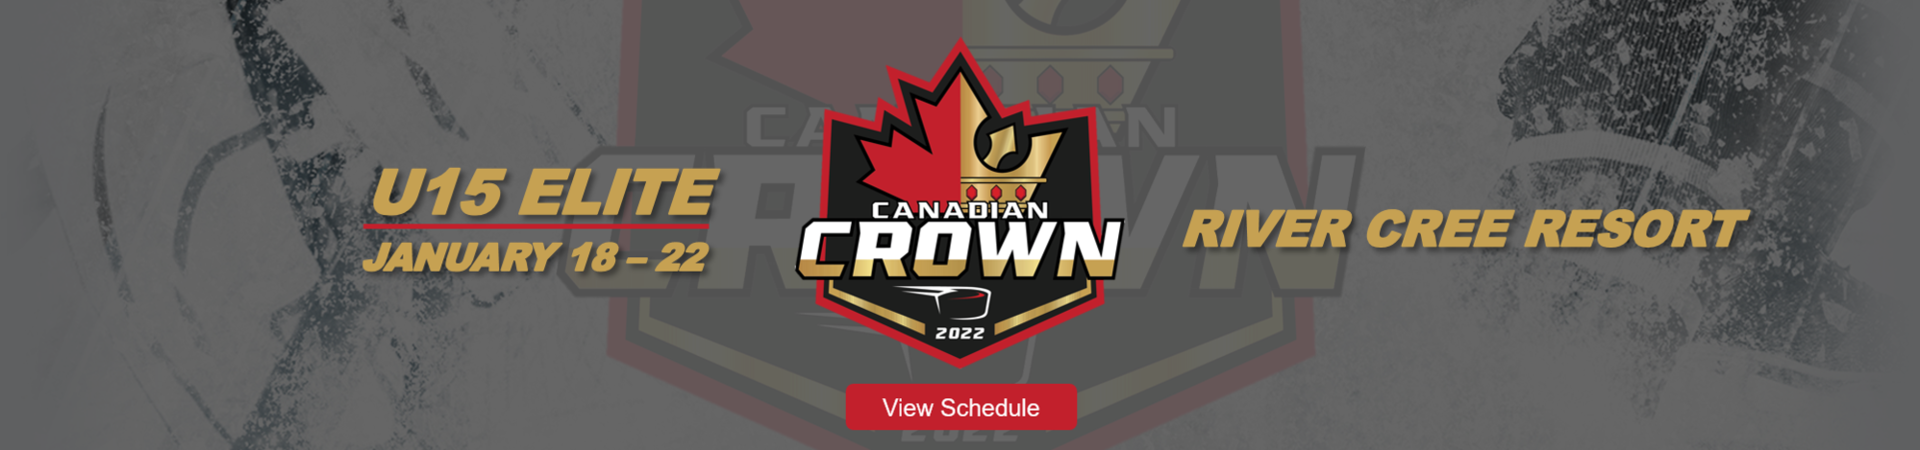 Canadian Crown U15 Elite